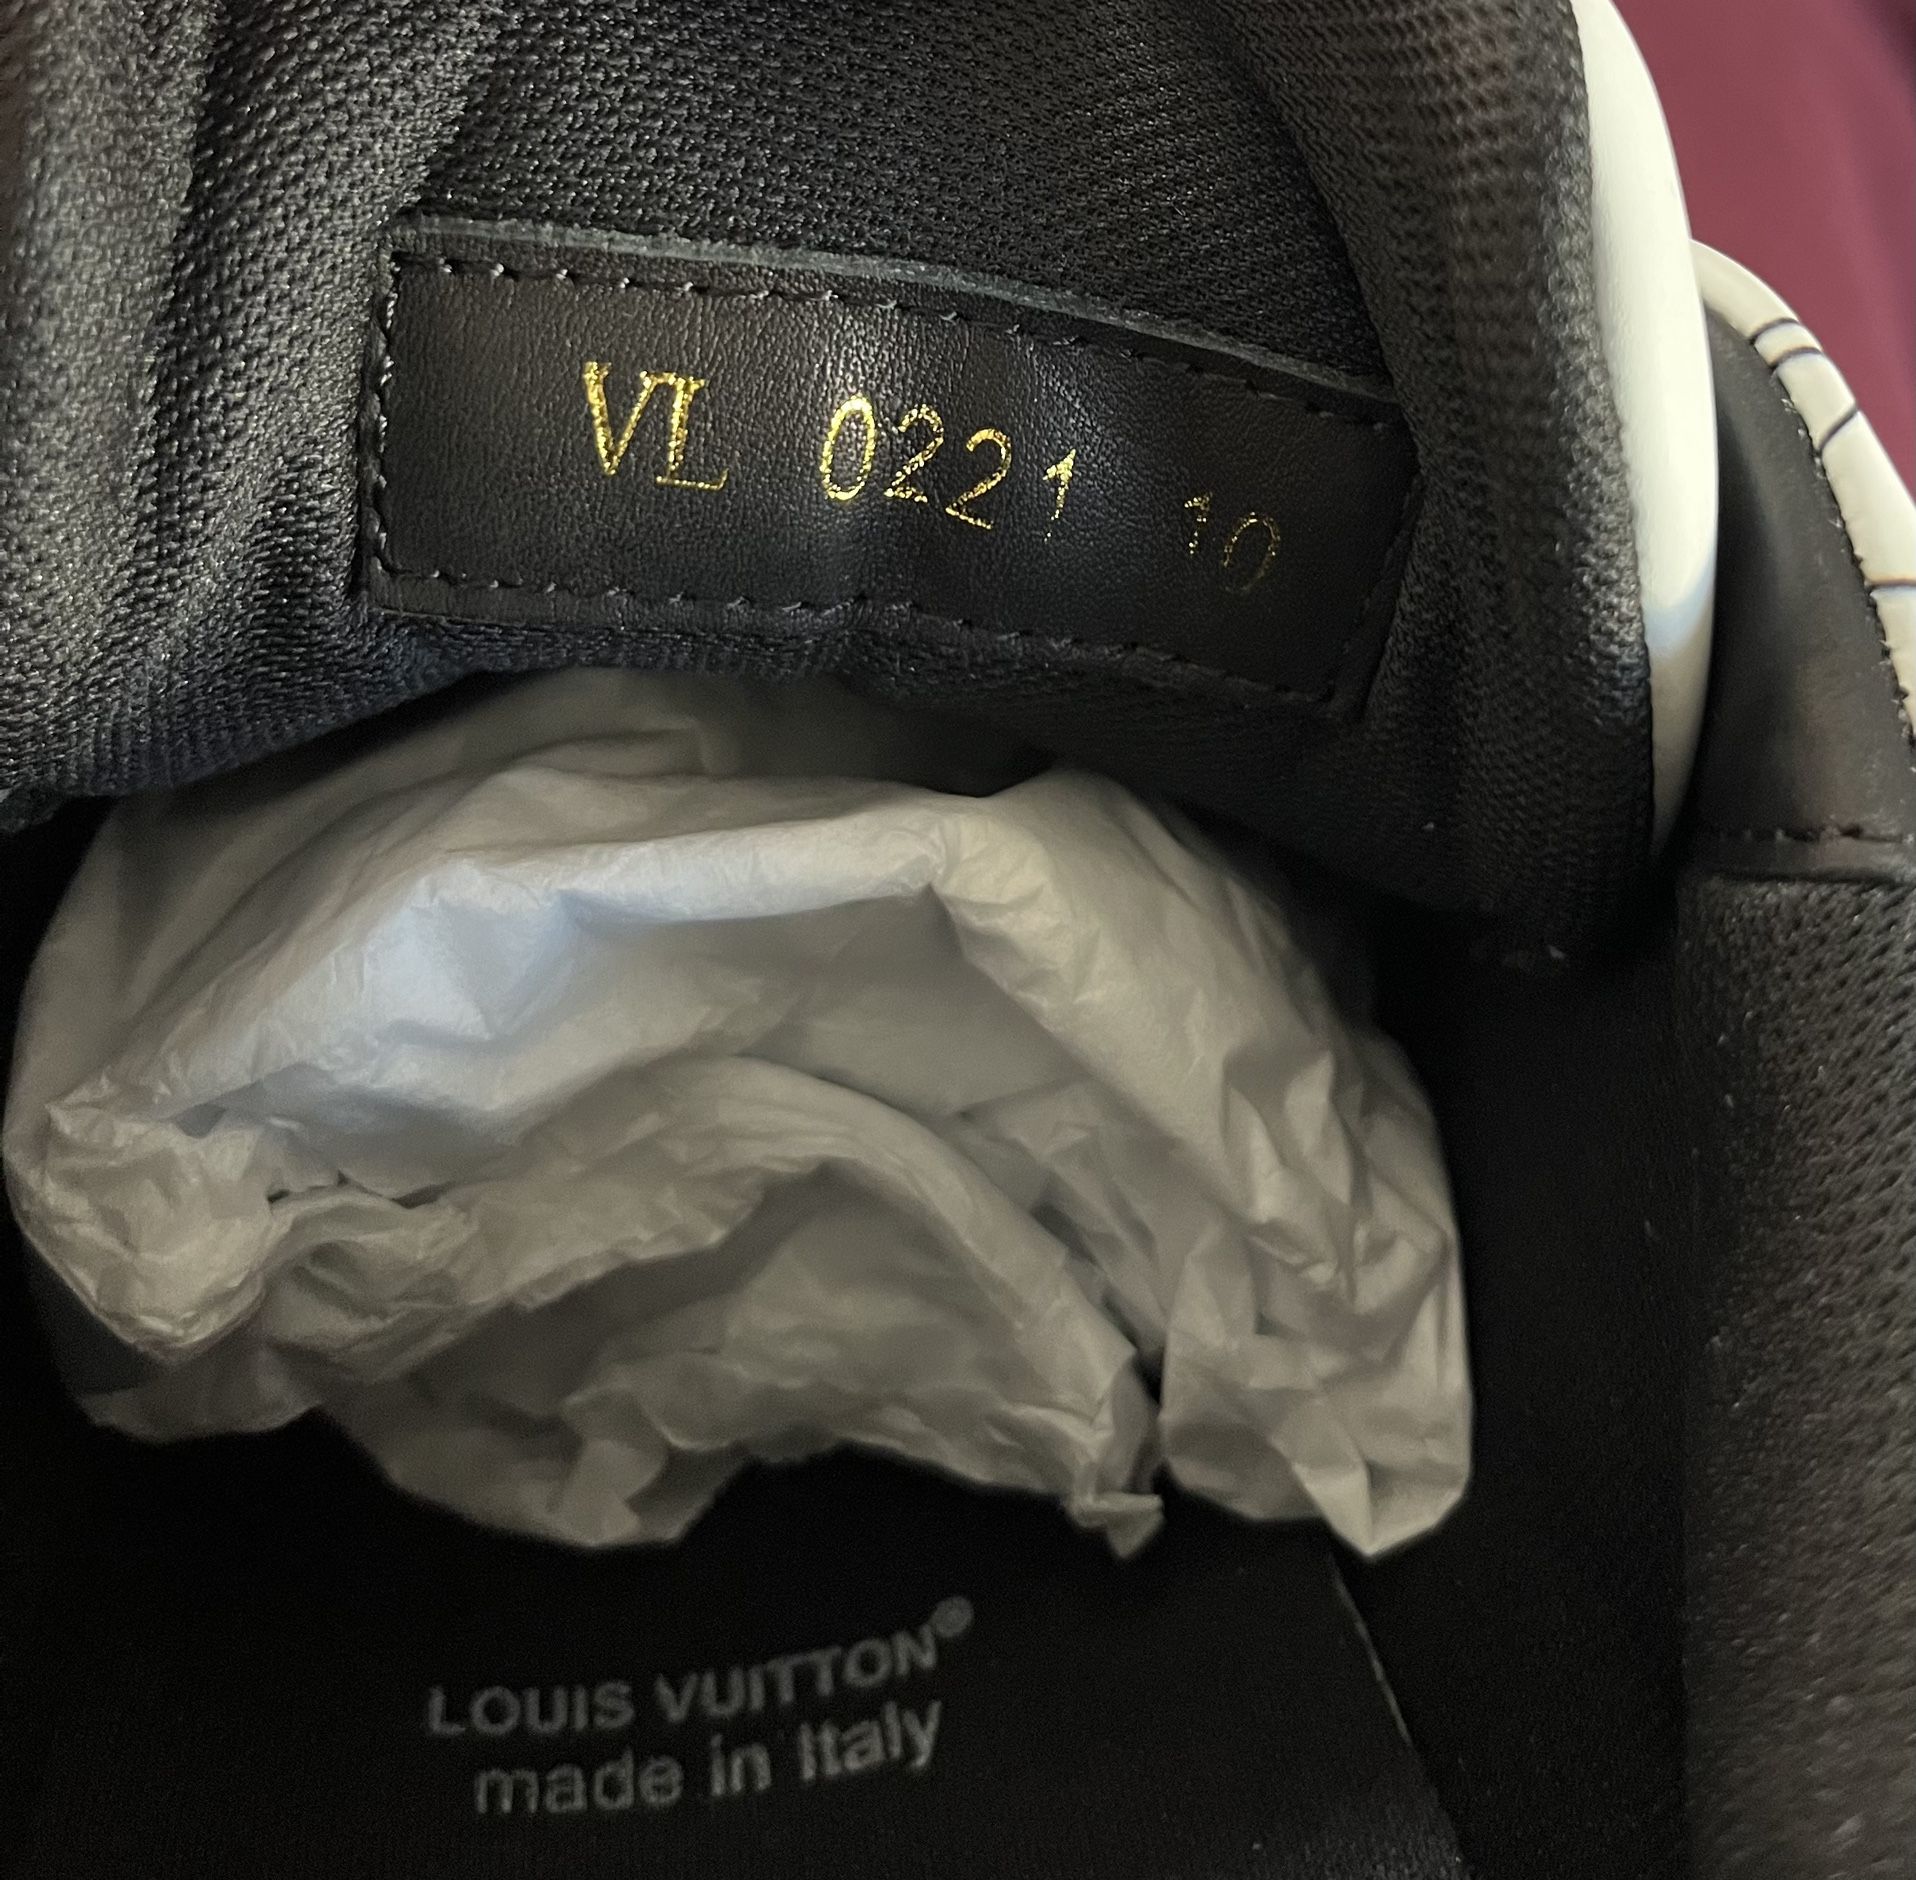 Louis Vuitton LV Trainer #54 Graphic Print White Black Blue Men's - 1AA376  - US